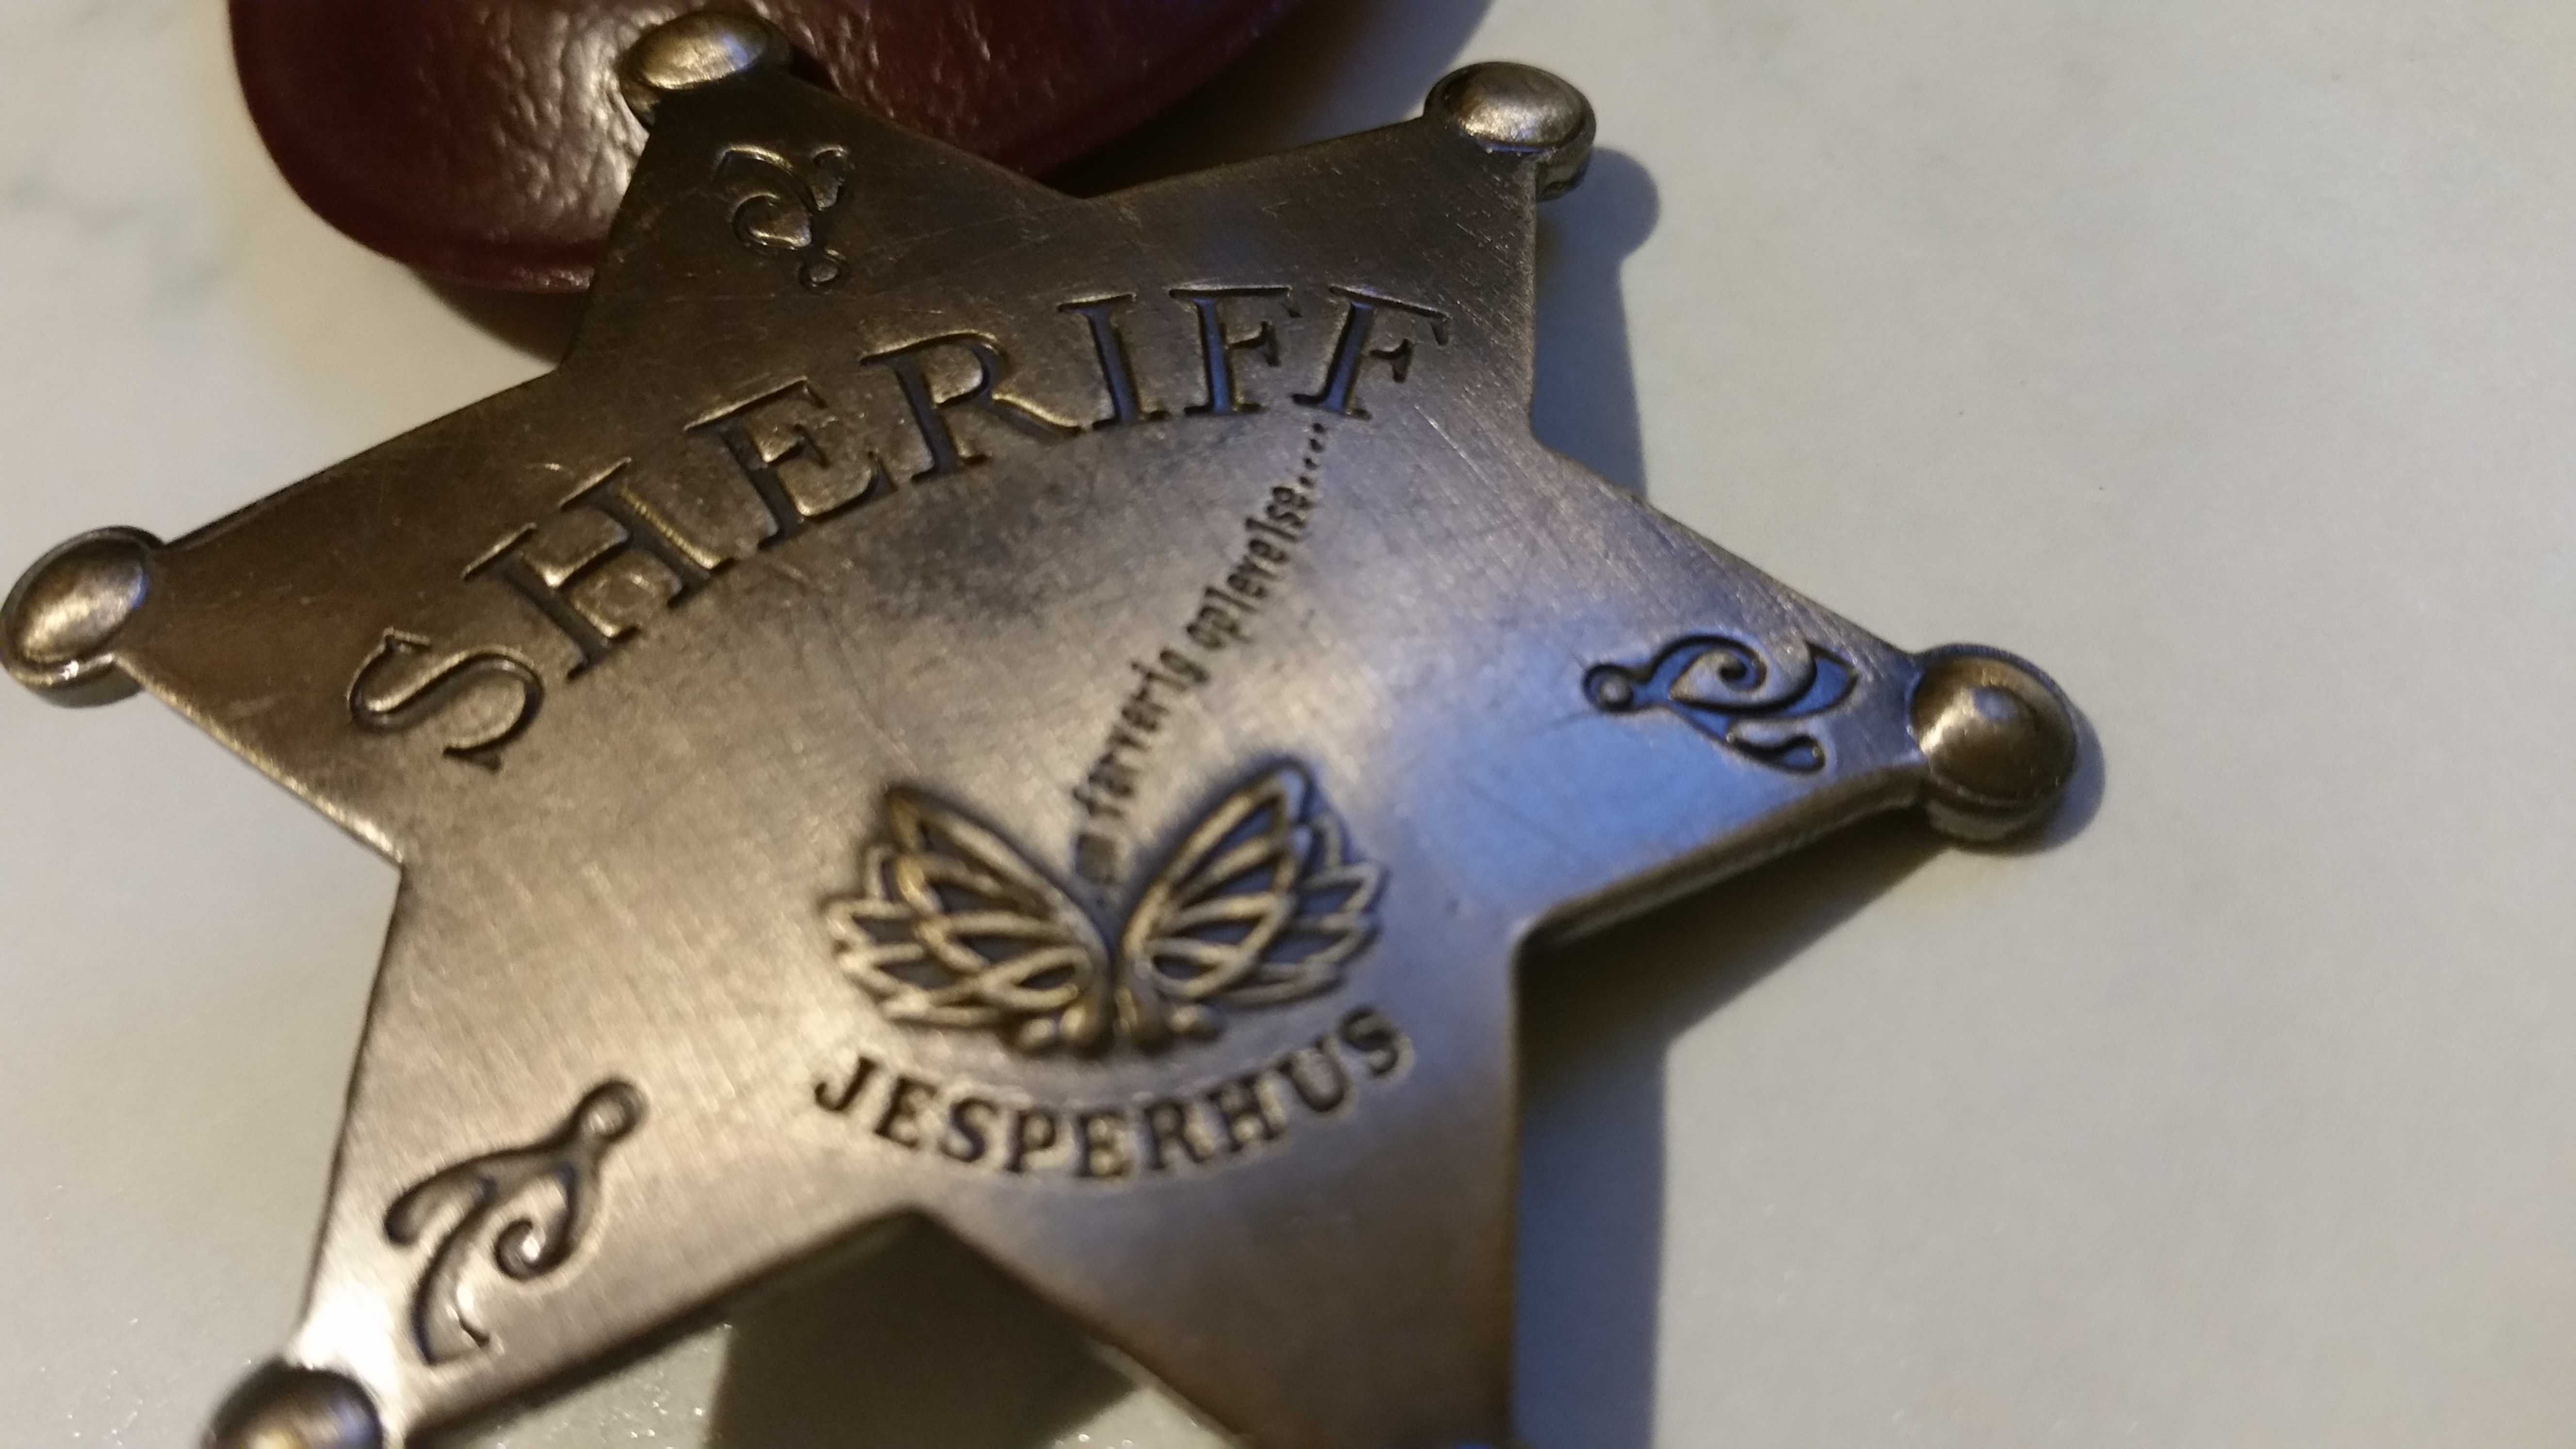 Gwiazda SHERIFF Jesperhus